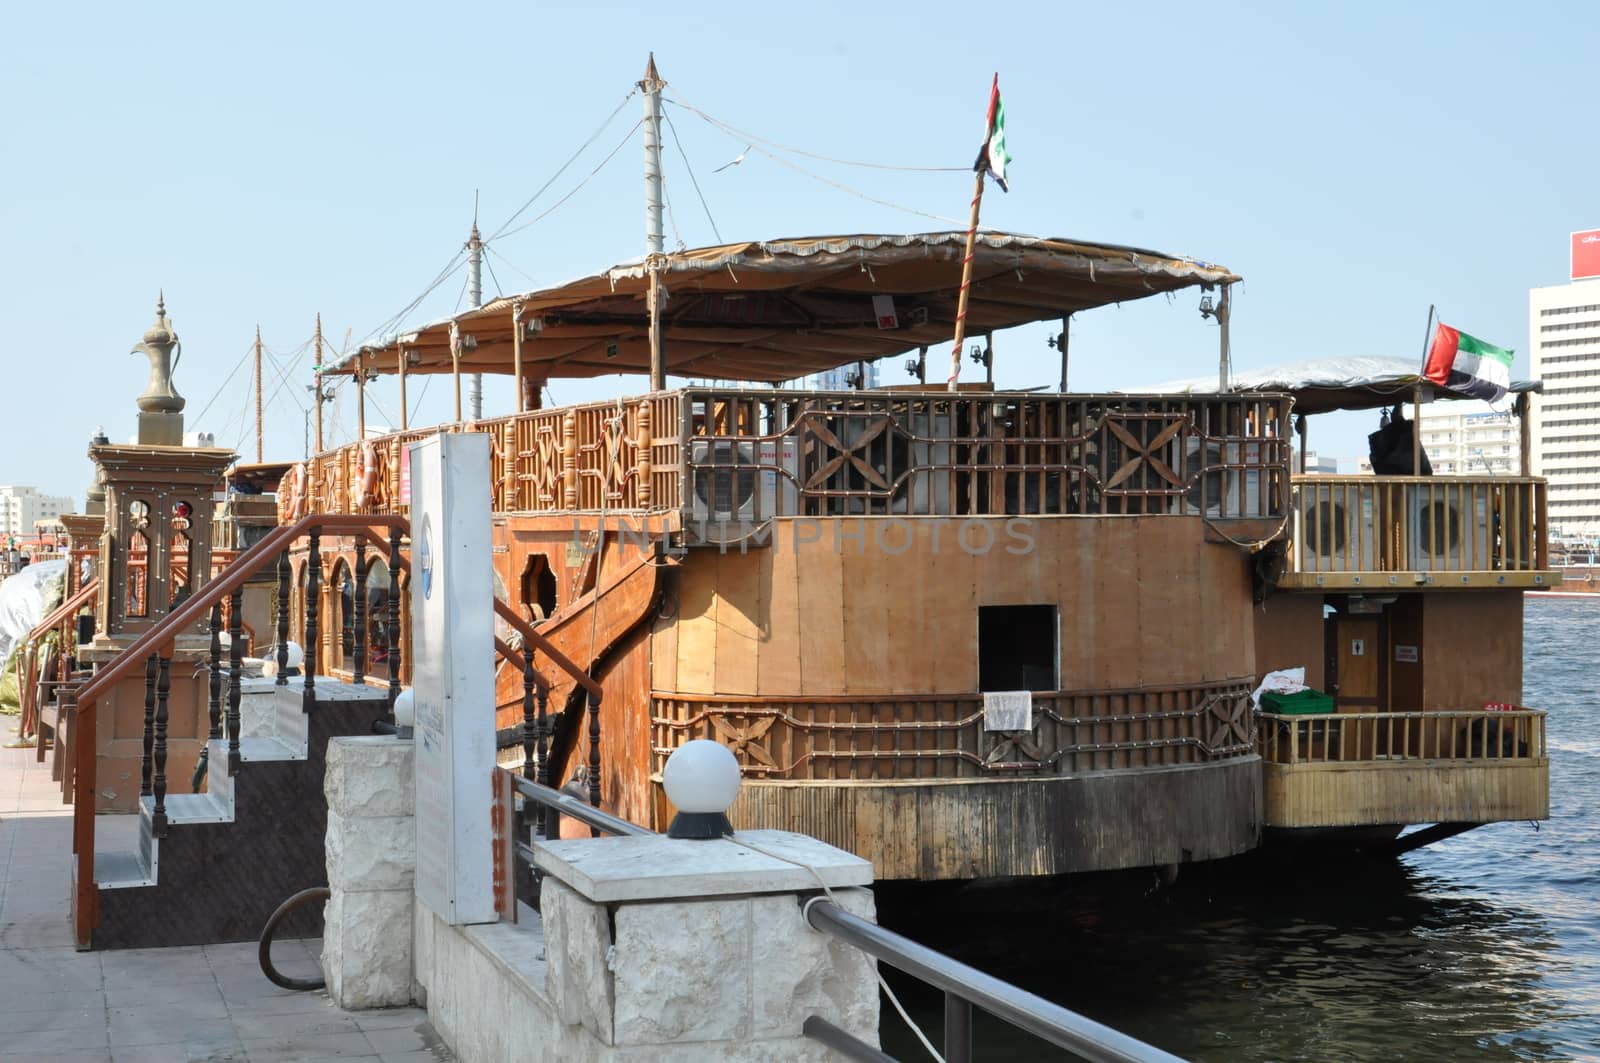 Boats, abras, dhows at Dubai Creek in the UAE by sainaniritu